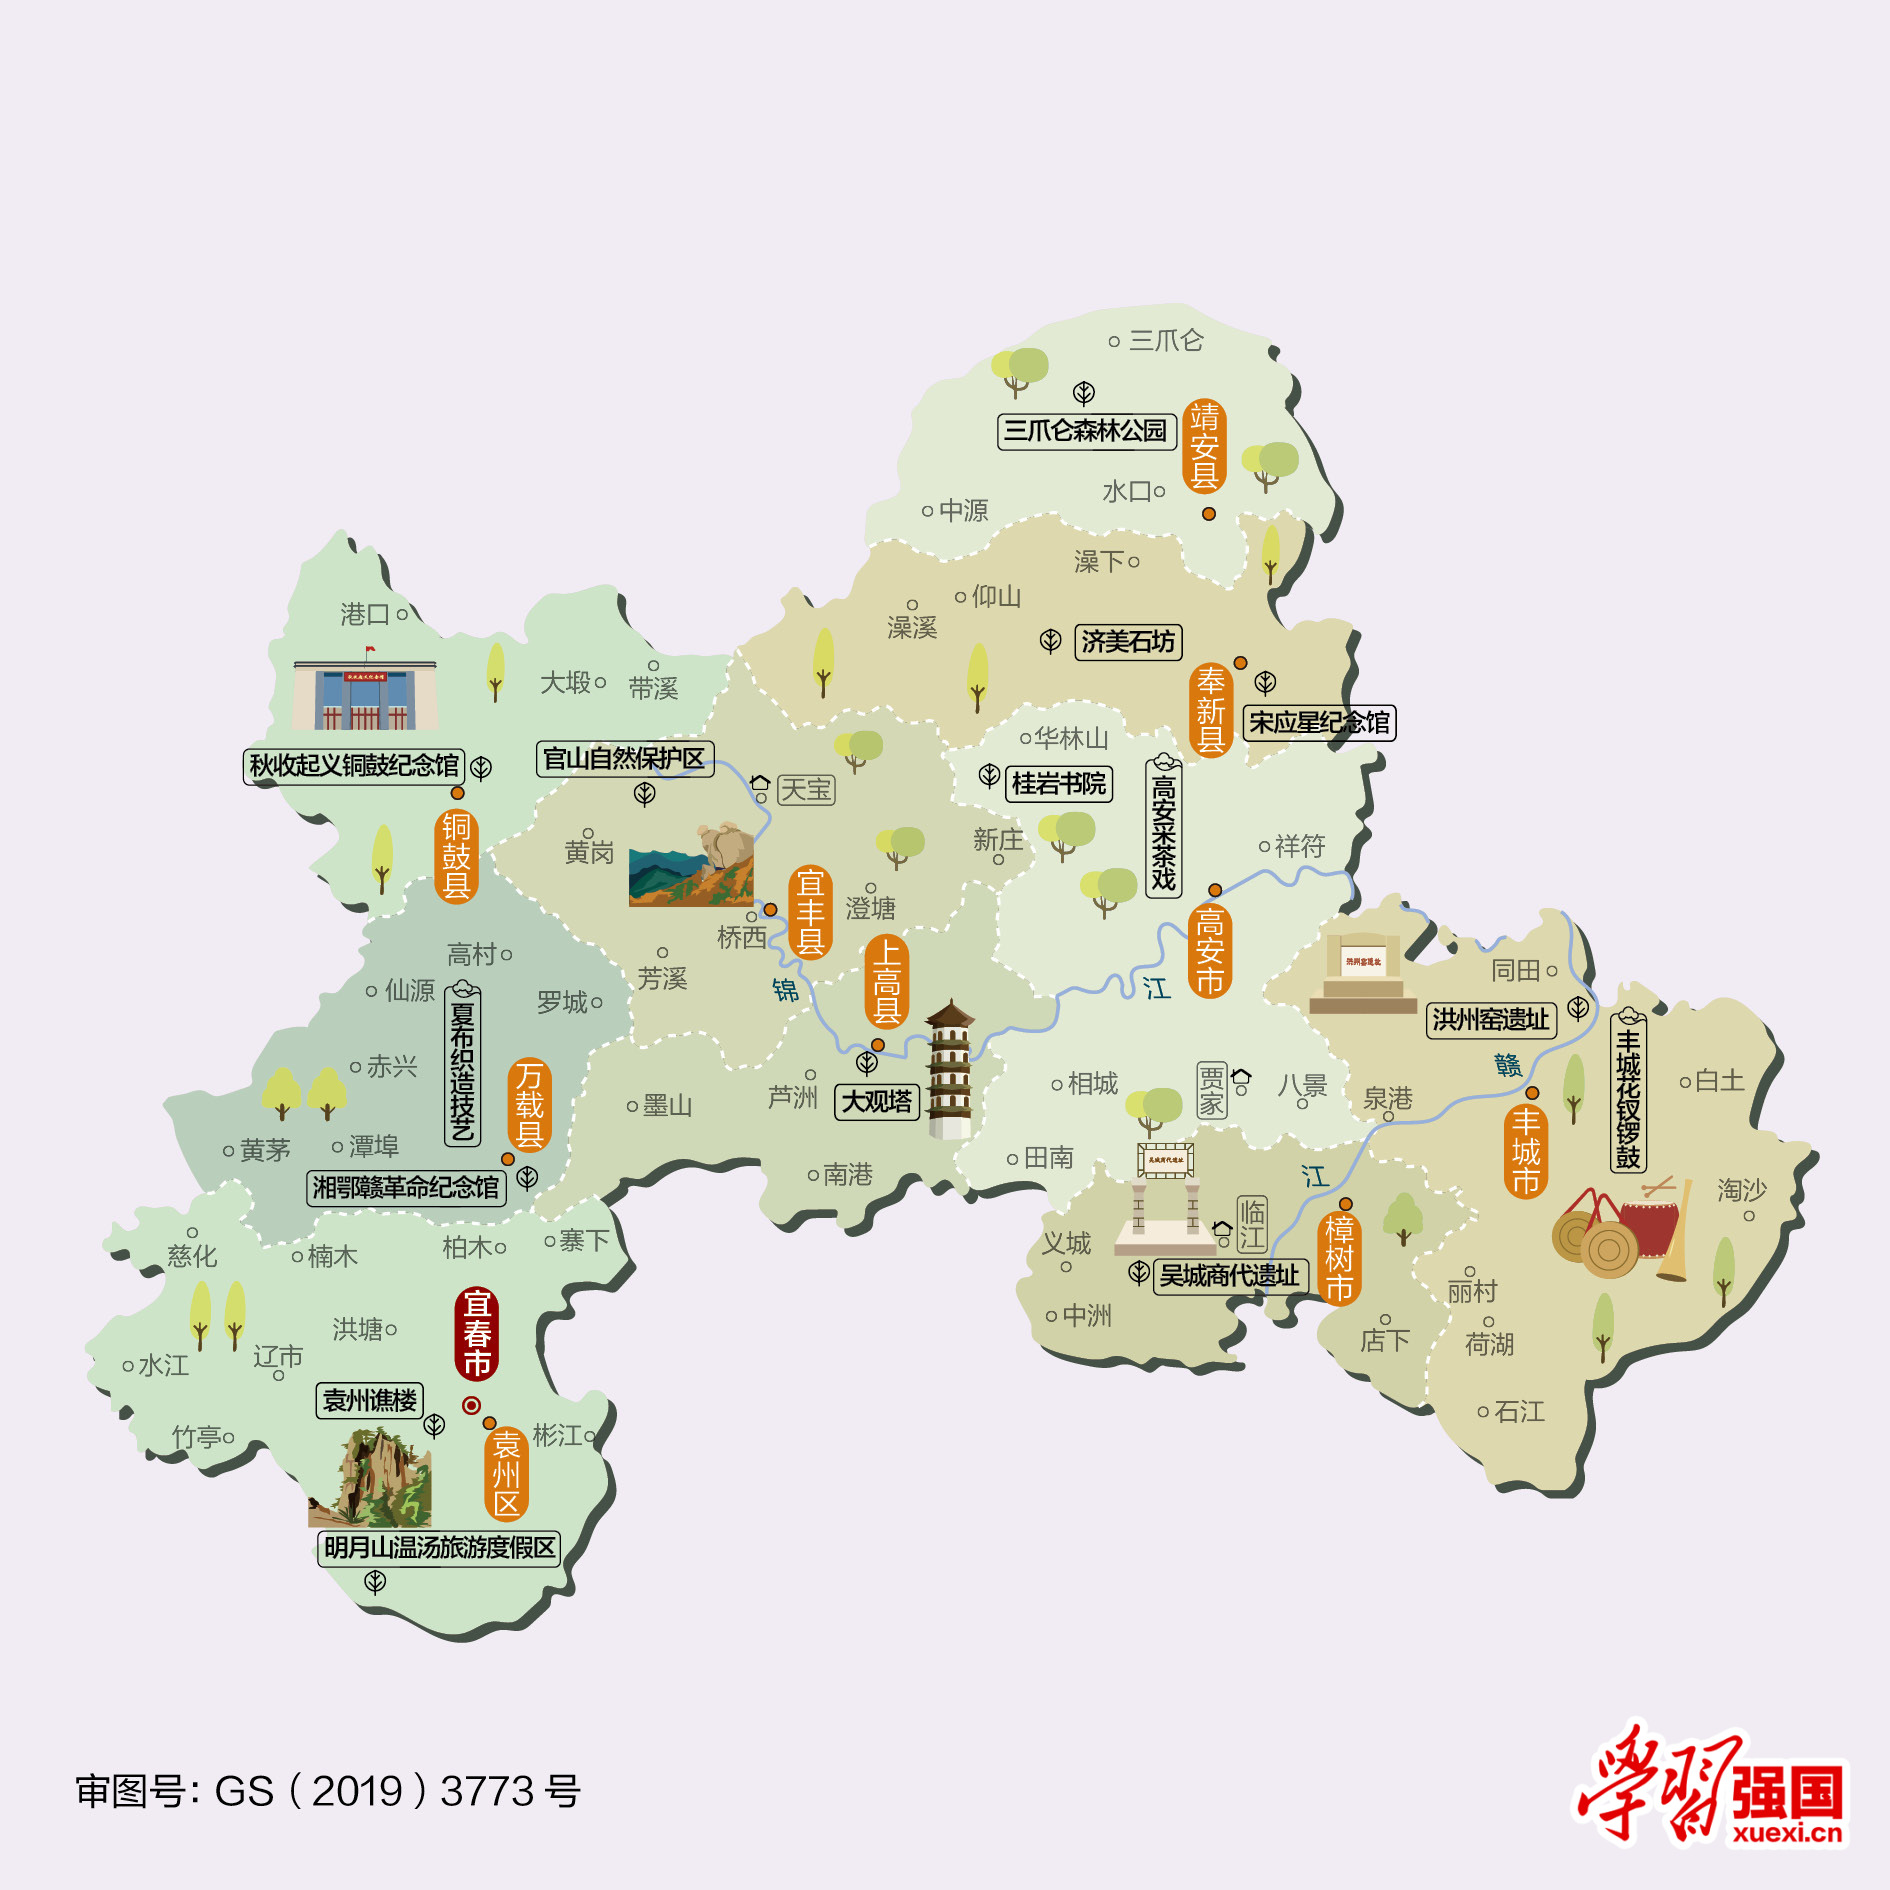 温馨提示:点击图片,查看《江西宜春旅游景点地图》高清大图